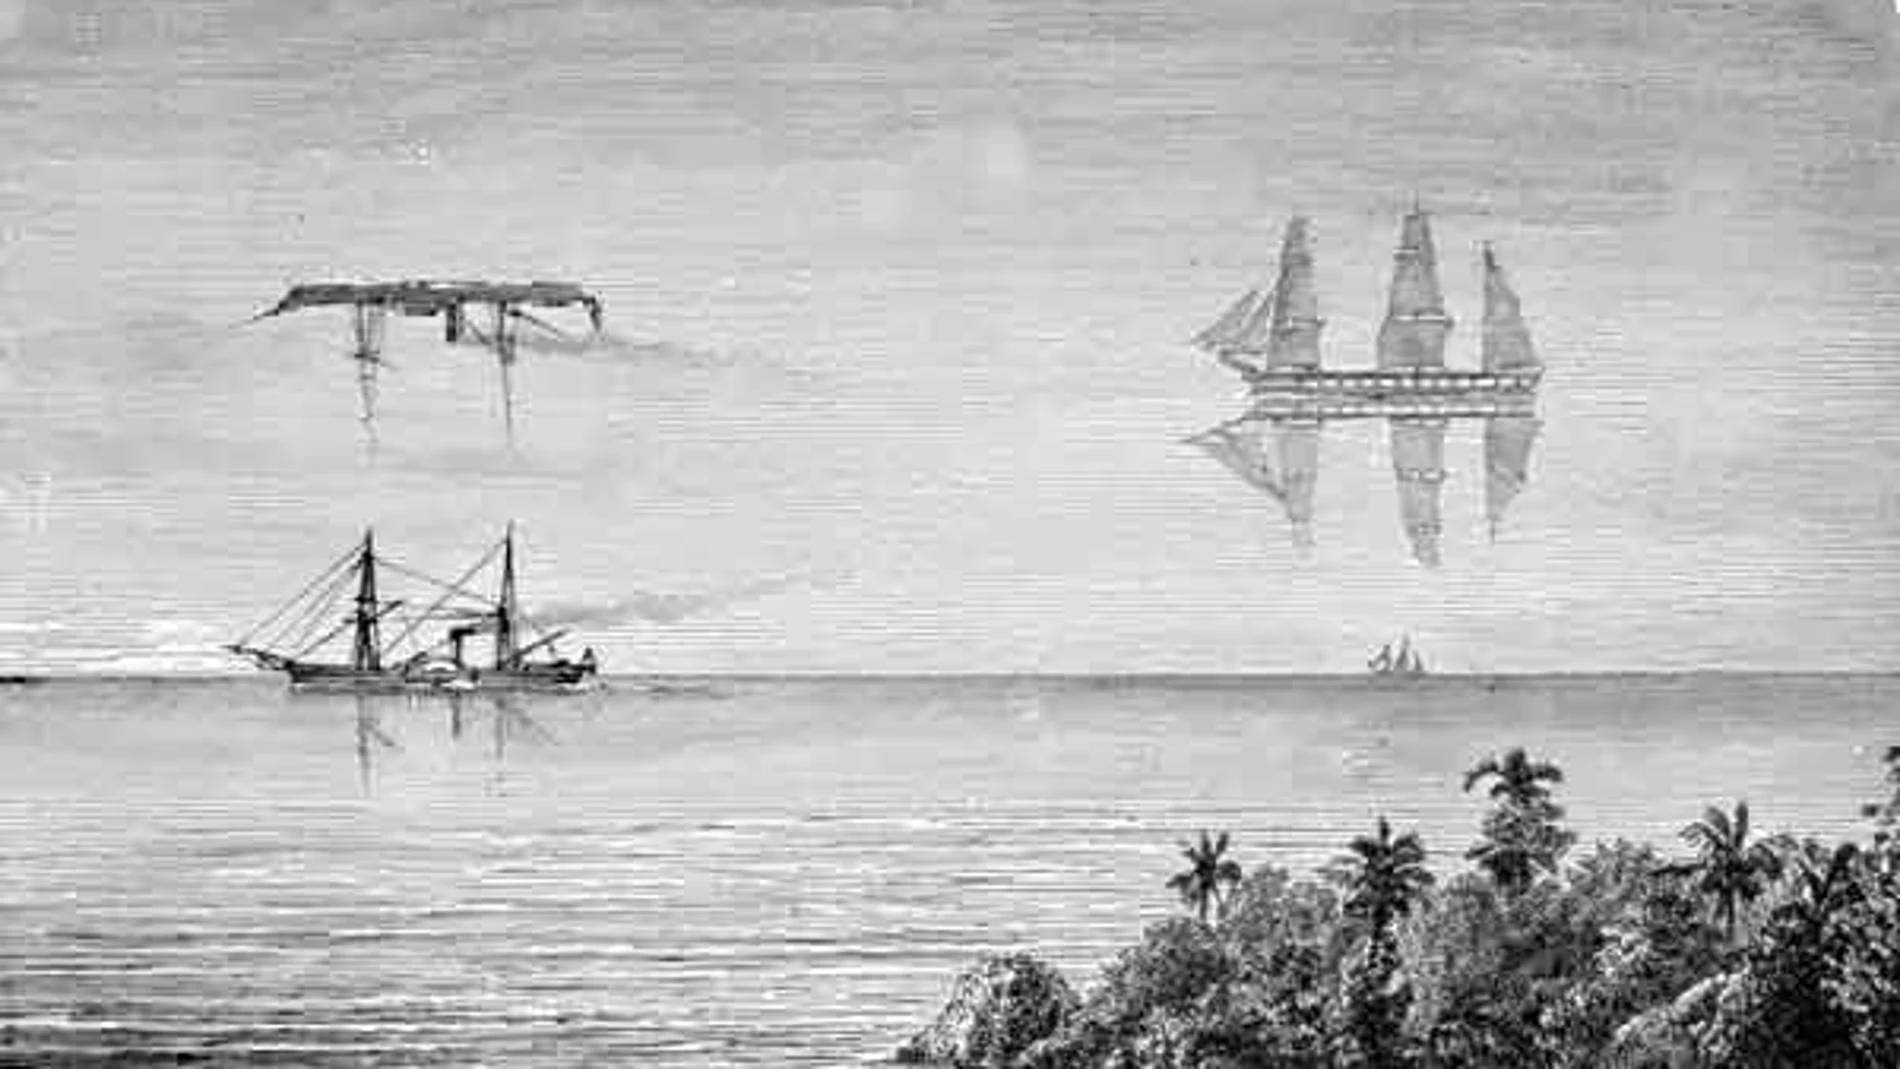 Ilustración del siglo XIX mostrando dos espejismos superiores en barcos a distinta distancias.